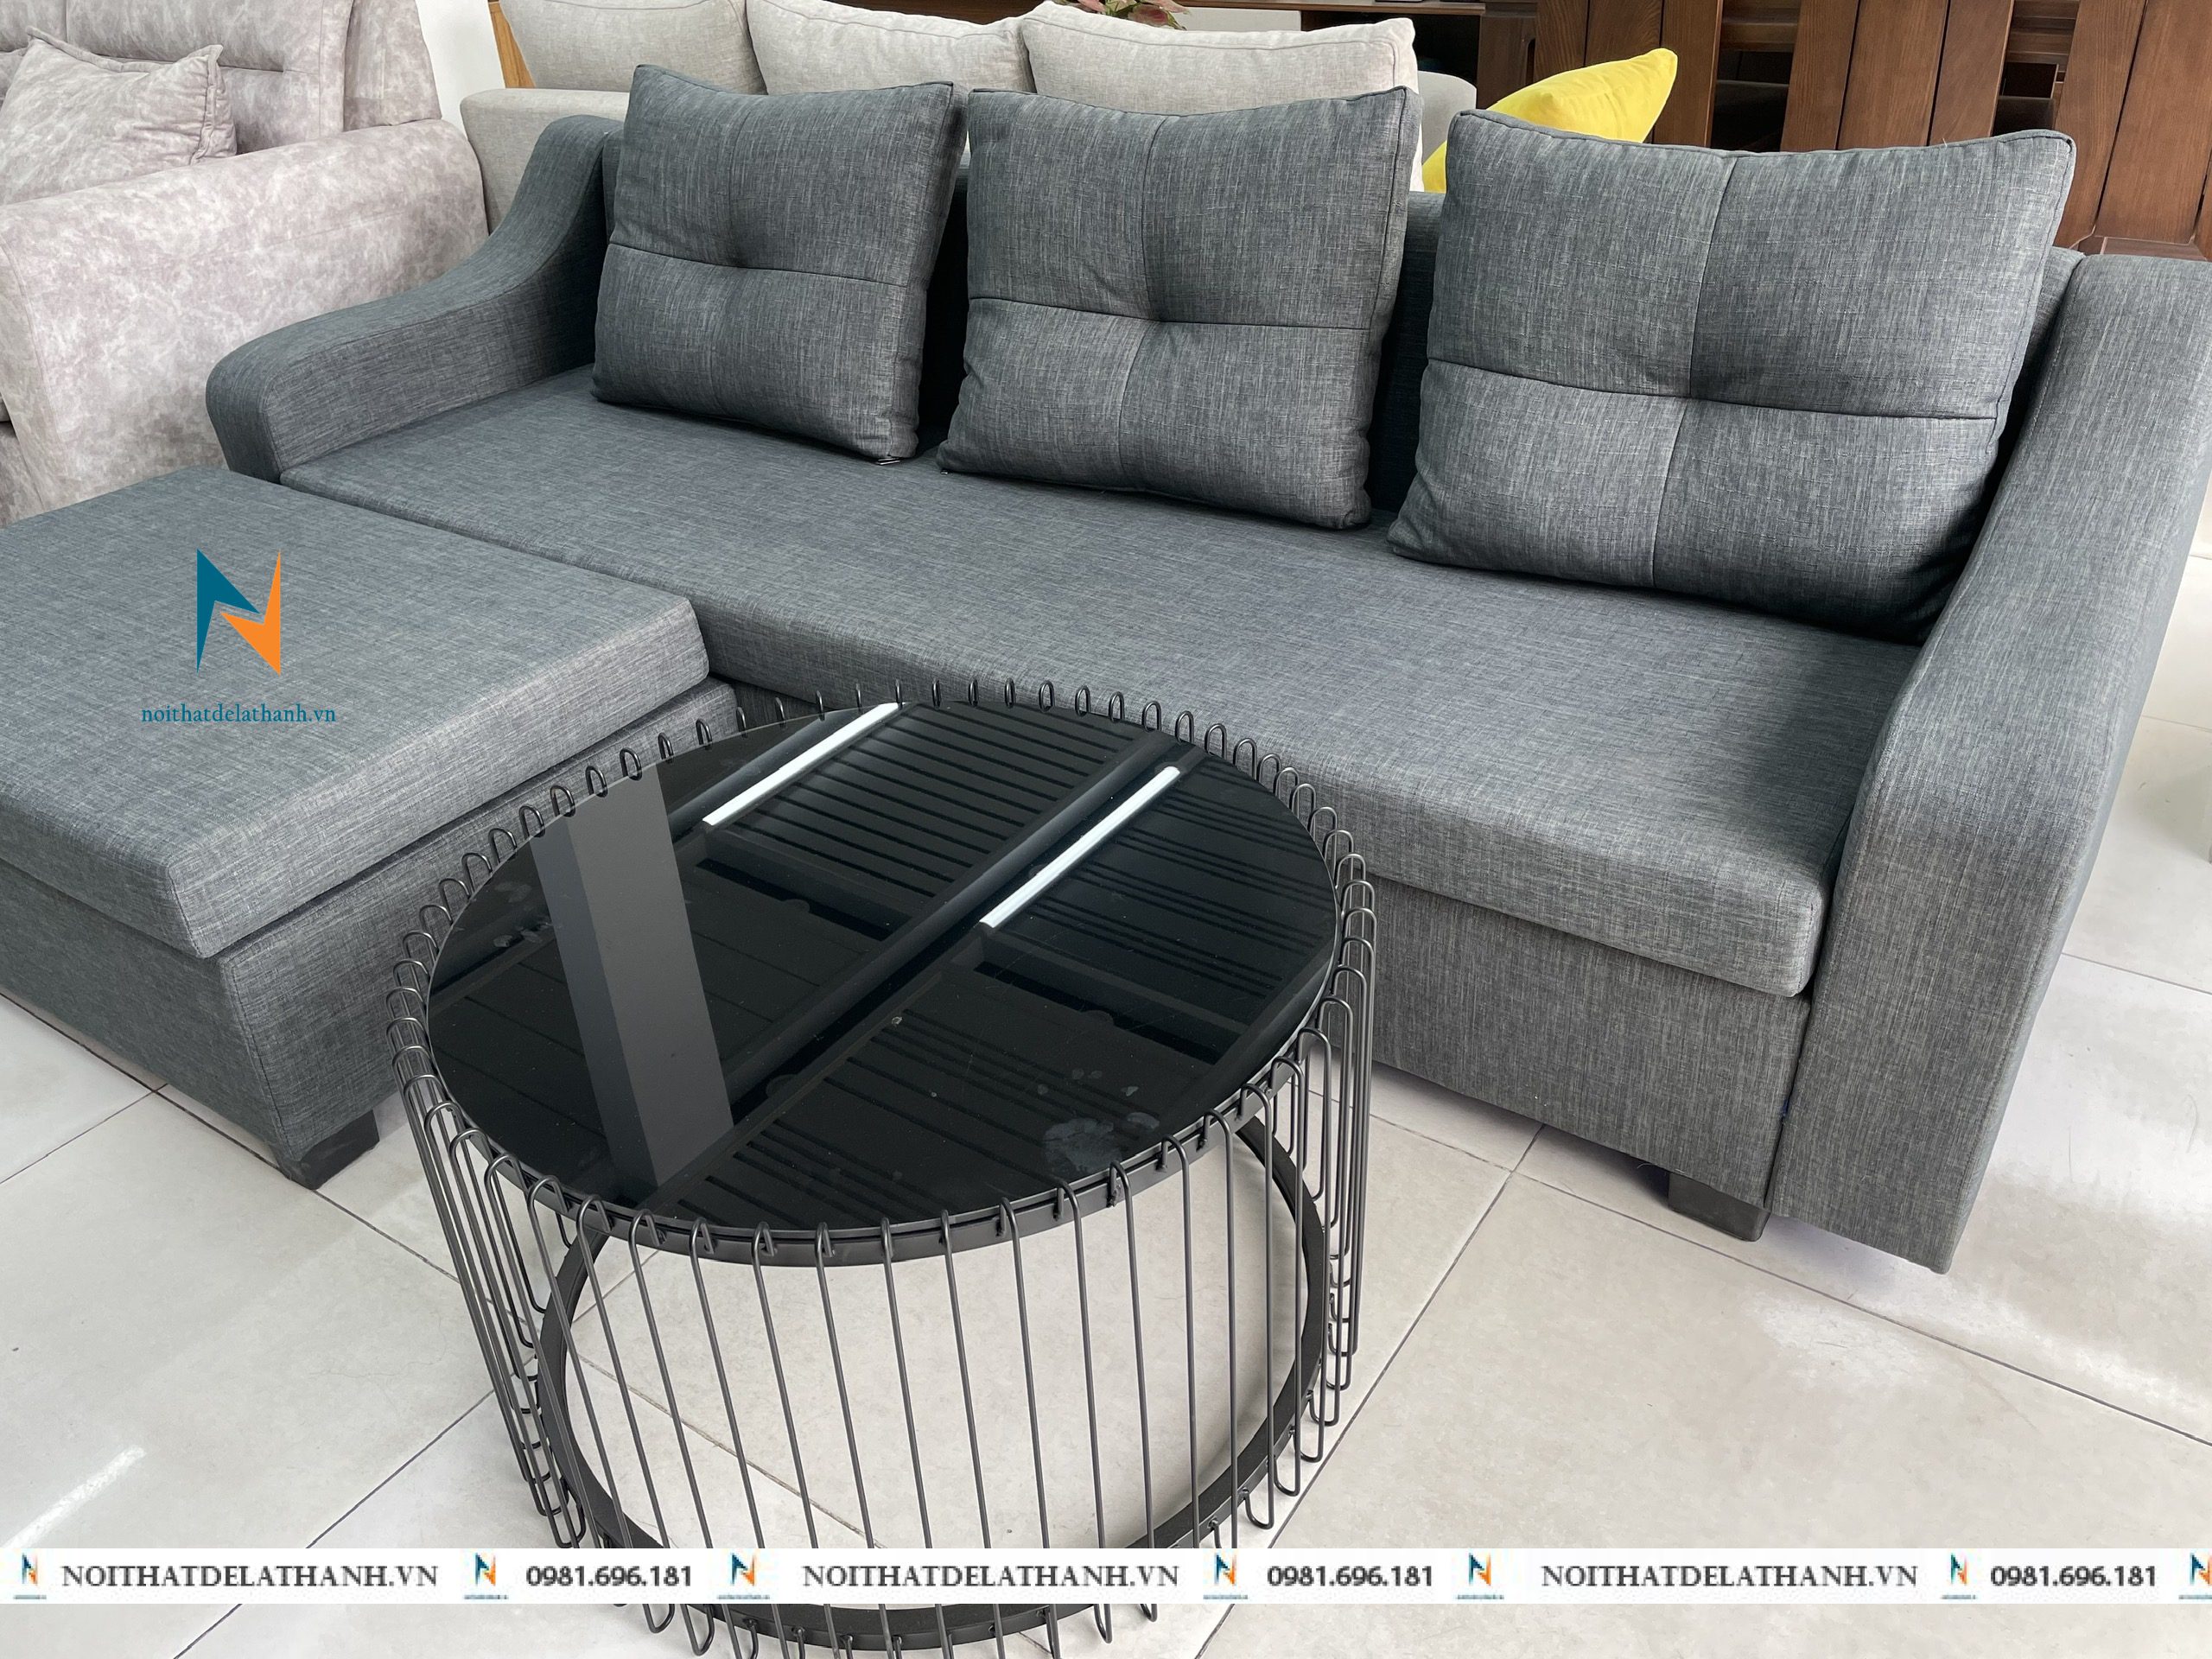 Những mẫu sofa thích hợp sử dụng tại nhà